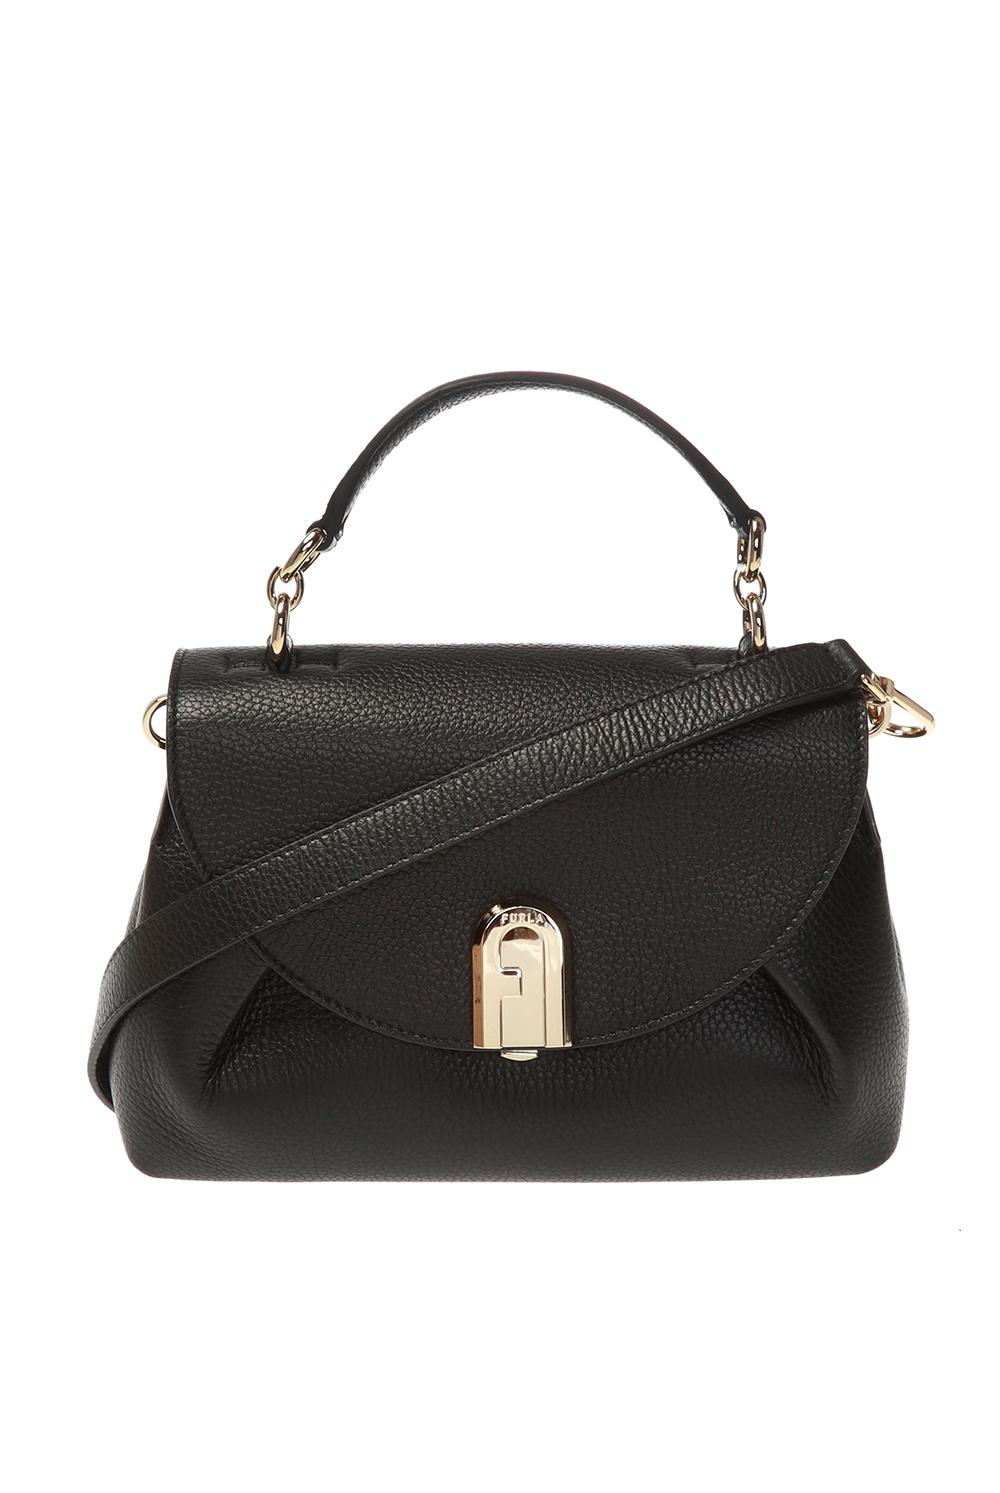 Furla Leather 'sleek' Shoulder Bag in Black - Lyst